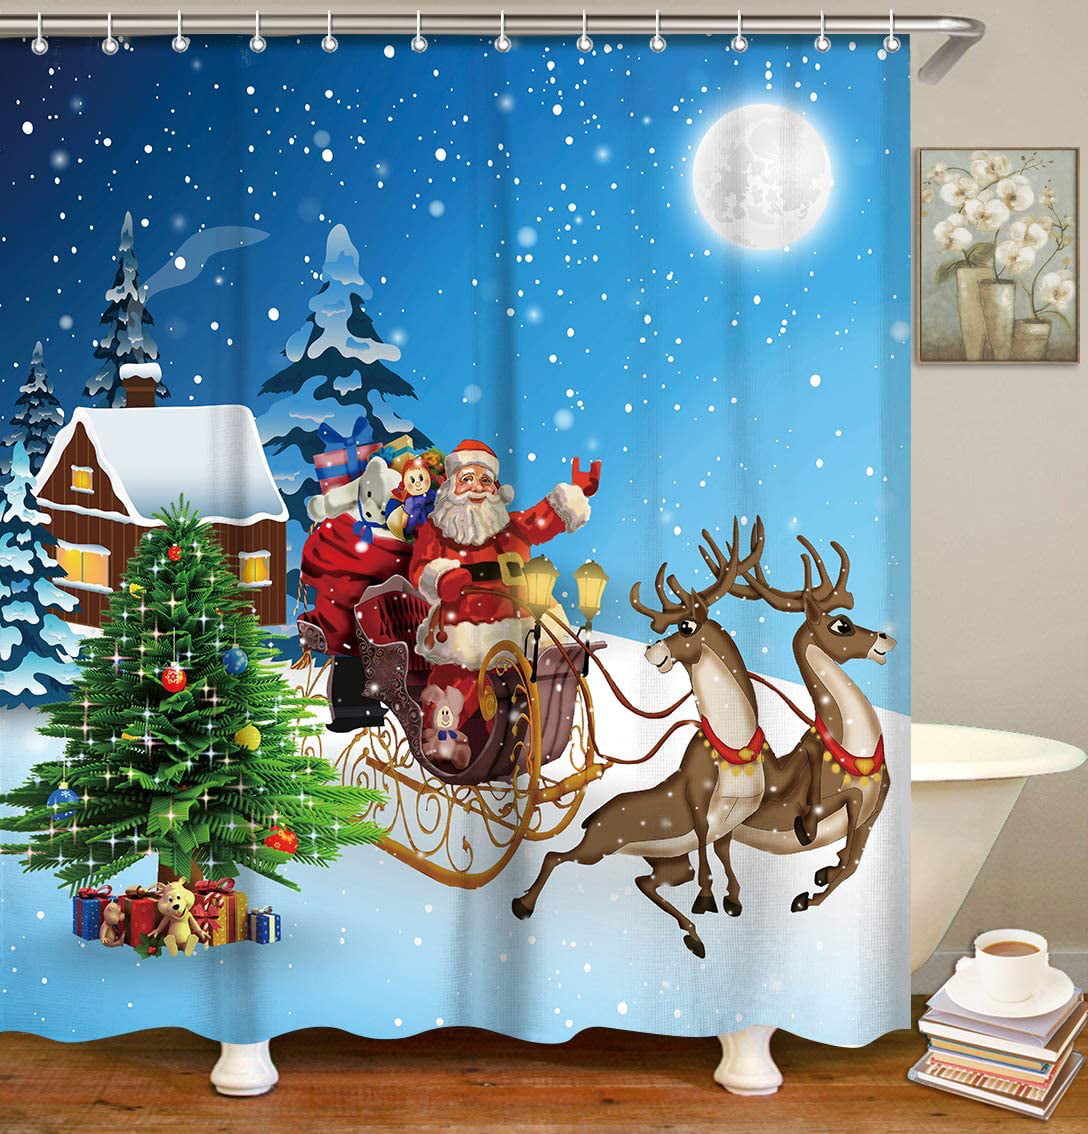 72 x 72 Inches Merry Christmas Shower Curtain,Cute Cartoon Santa Claus Bath Curtains with Hooks for Bathroom Decor,Xmas Decoration